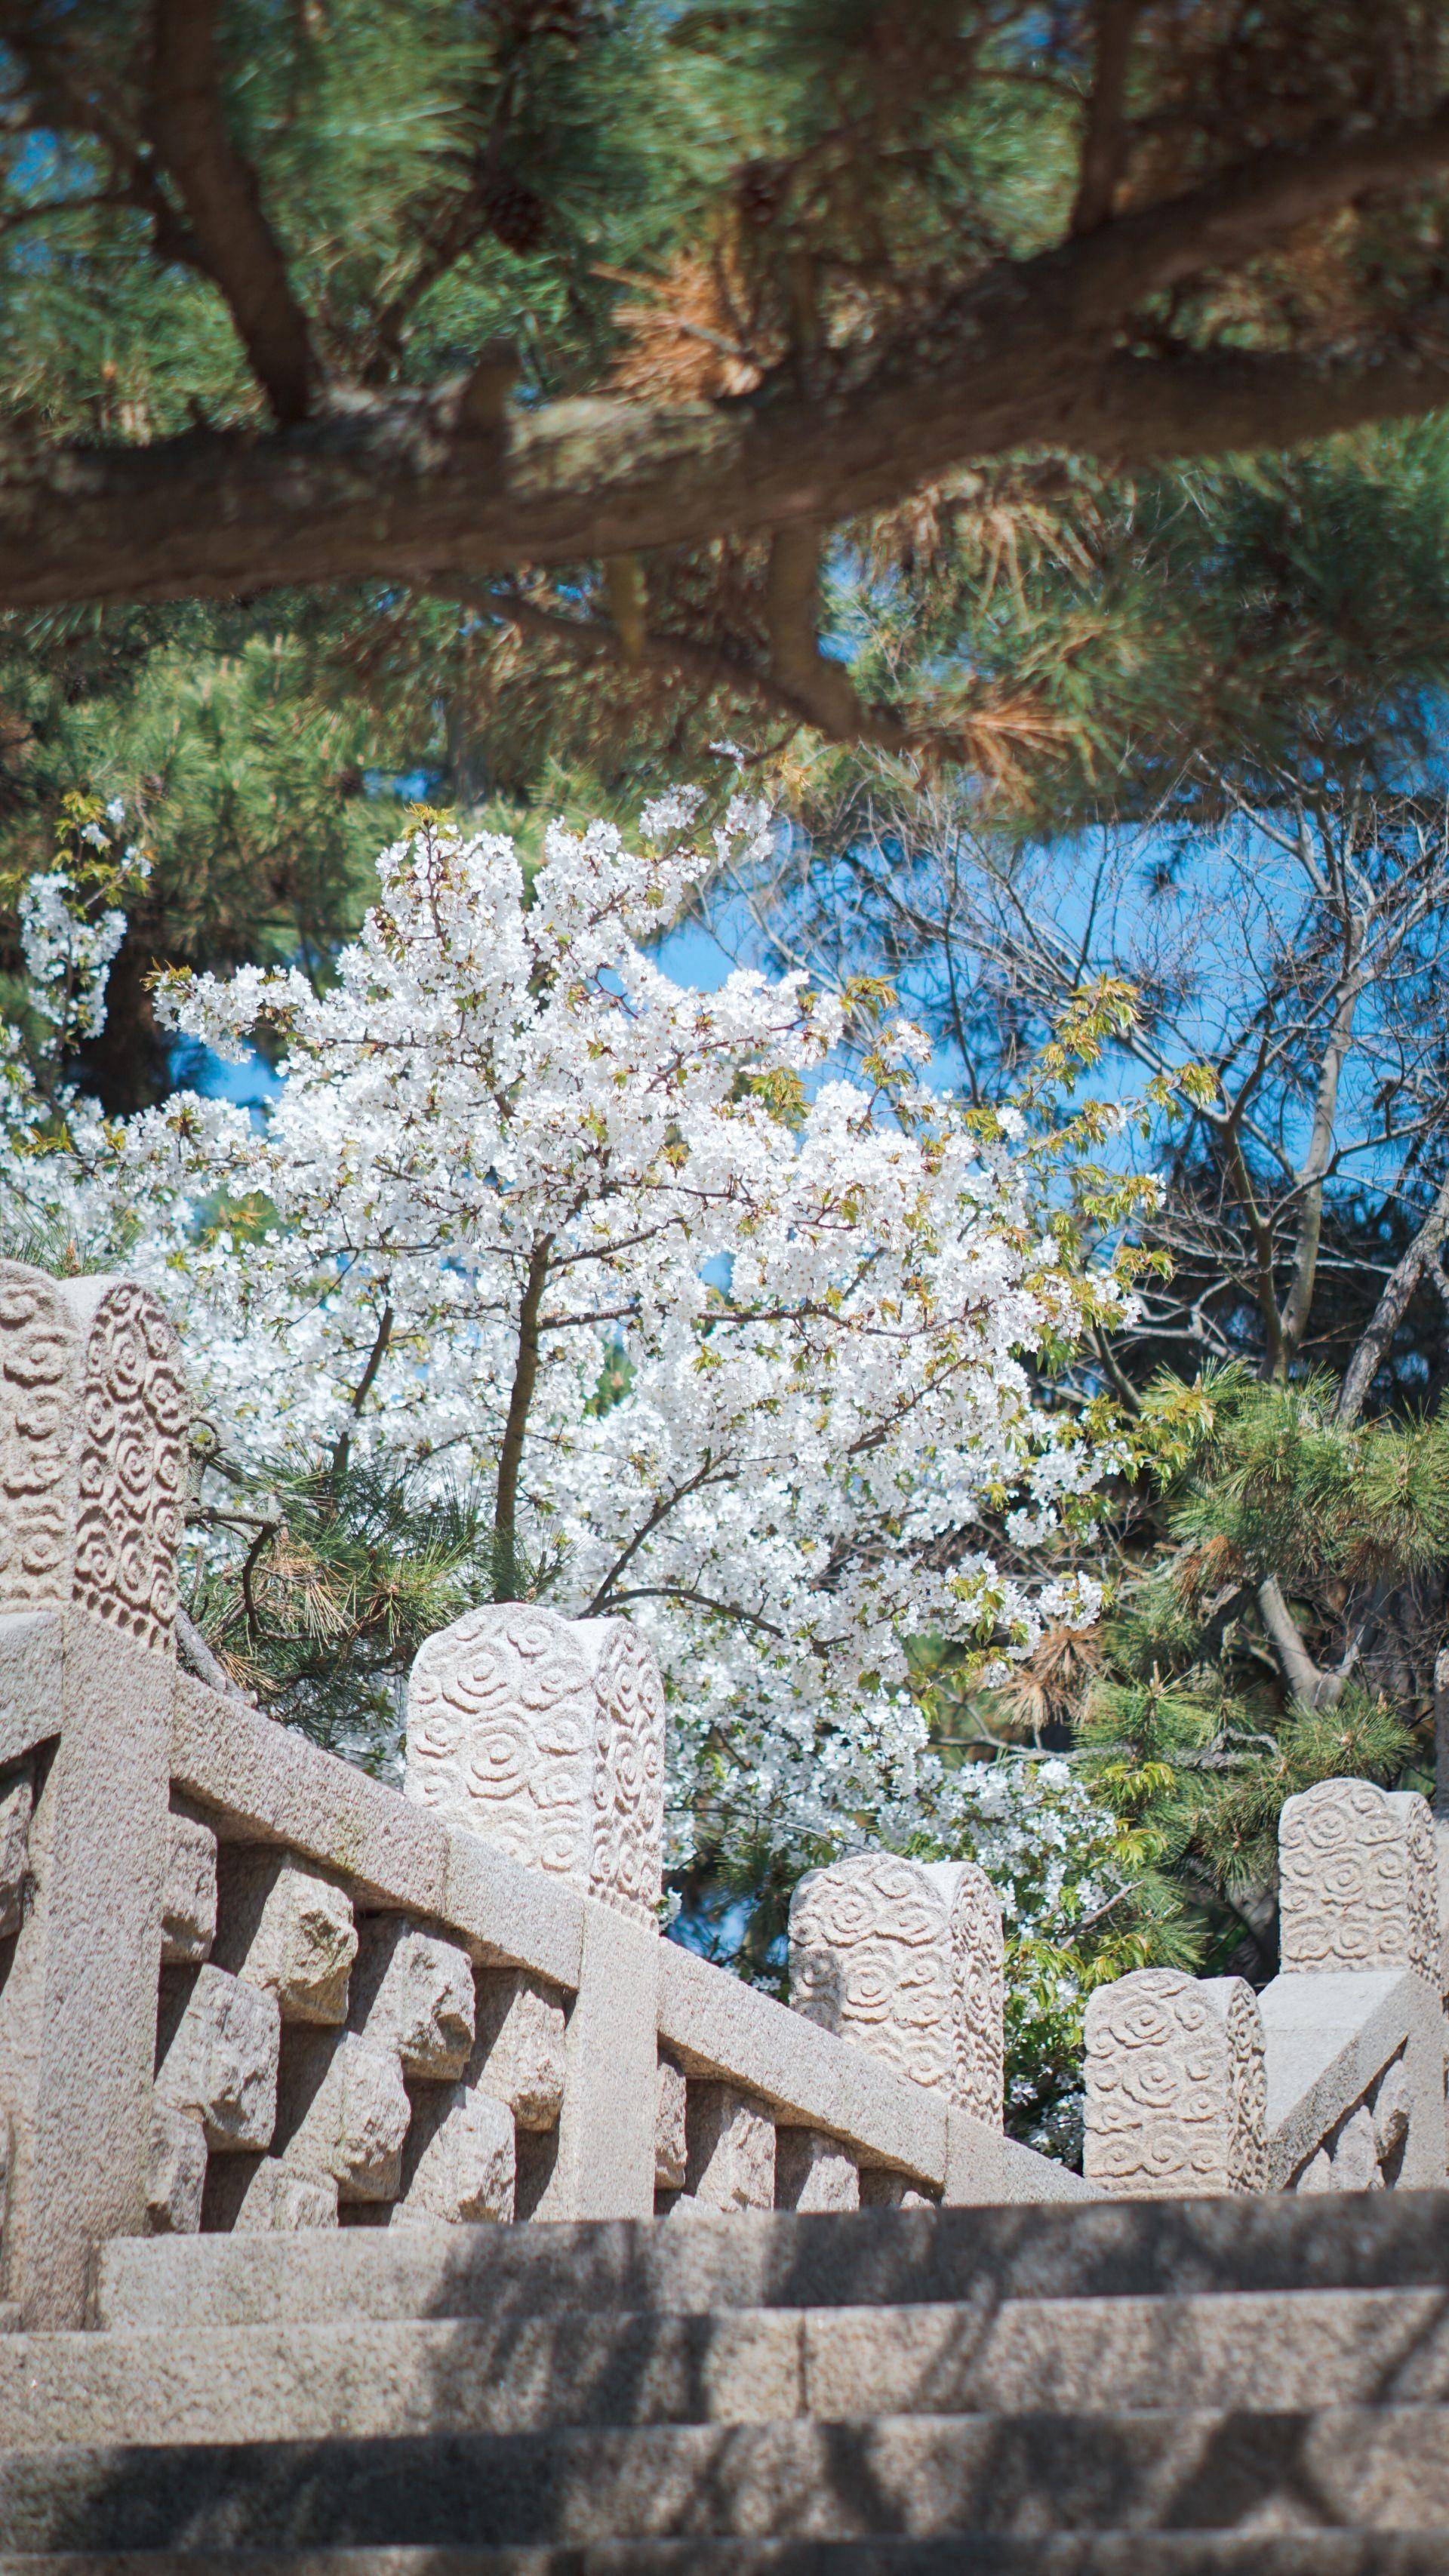 鲁迅公园内樱花盛开洁白的樱花樱花簇簇樱花与石阶,很美的景致